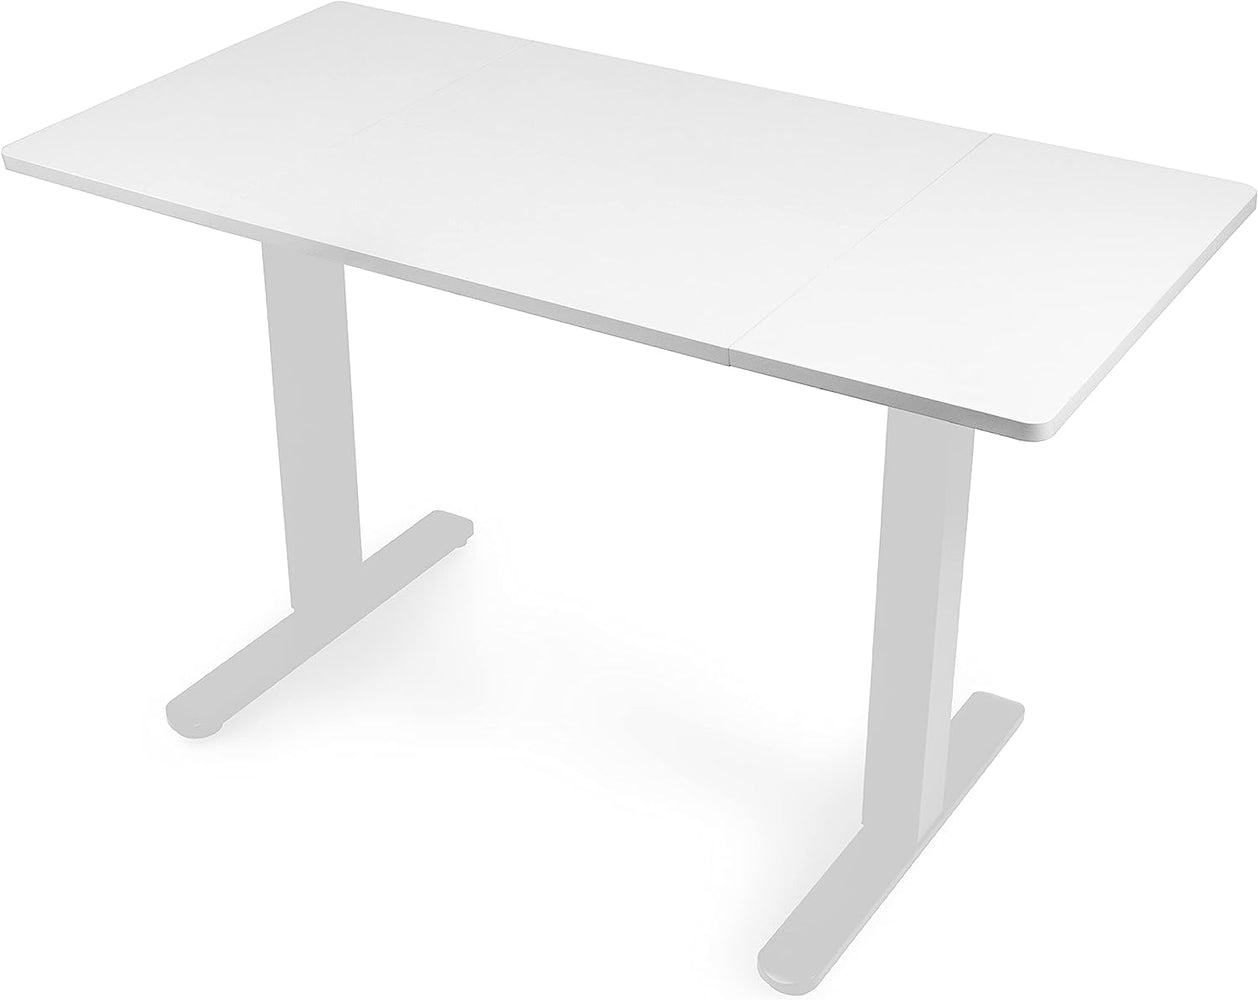 Duronic TT160 WE Blat do biurka z elektryczną regulacją wysokości z MDF 160 x 60 cm Kolor: biały | biurko stój-siedź miksuj i łącz blat i rama | wygodne ergonomiczne biurko prostokątne